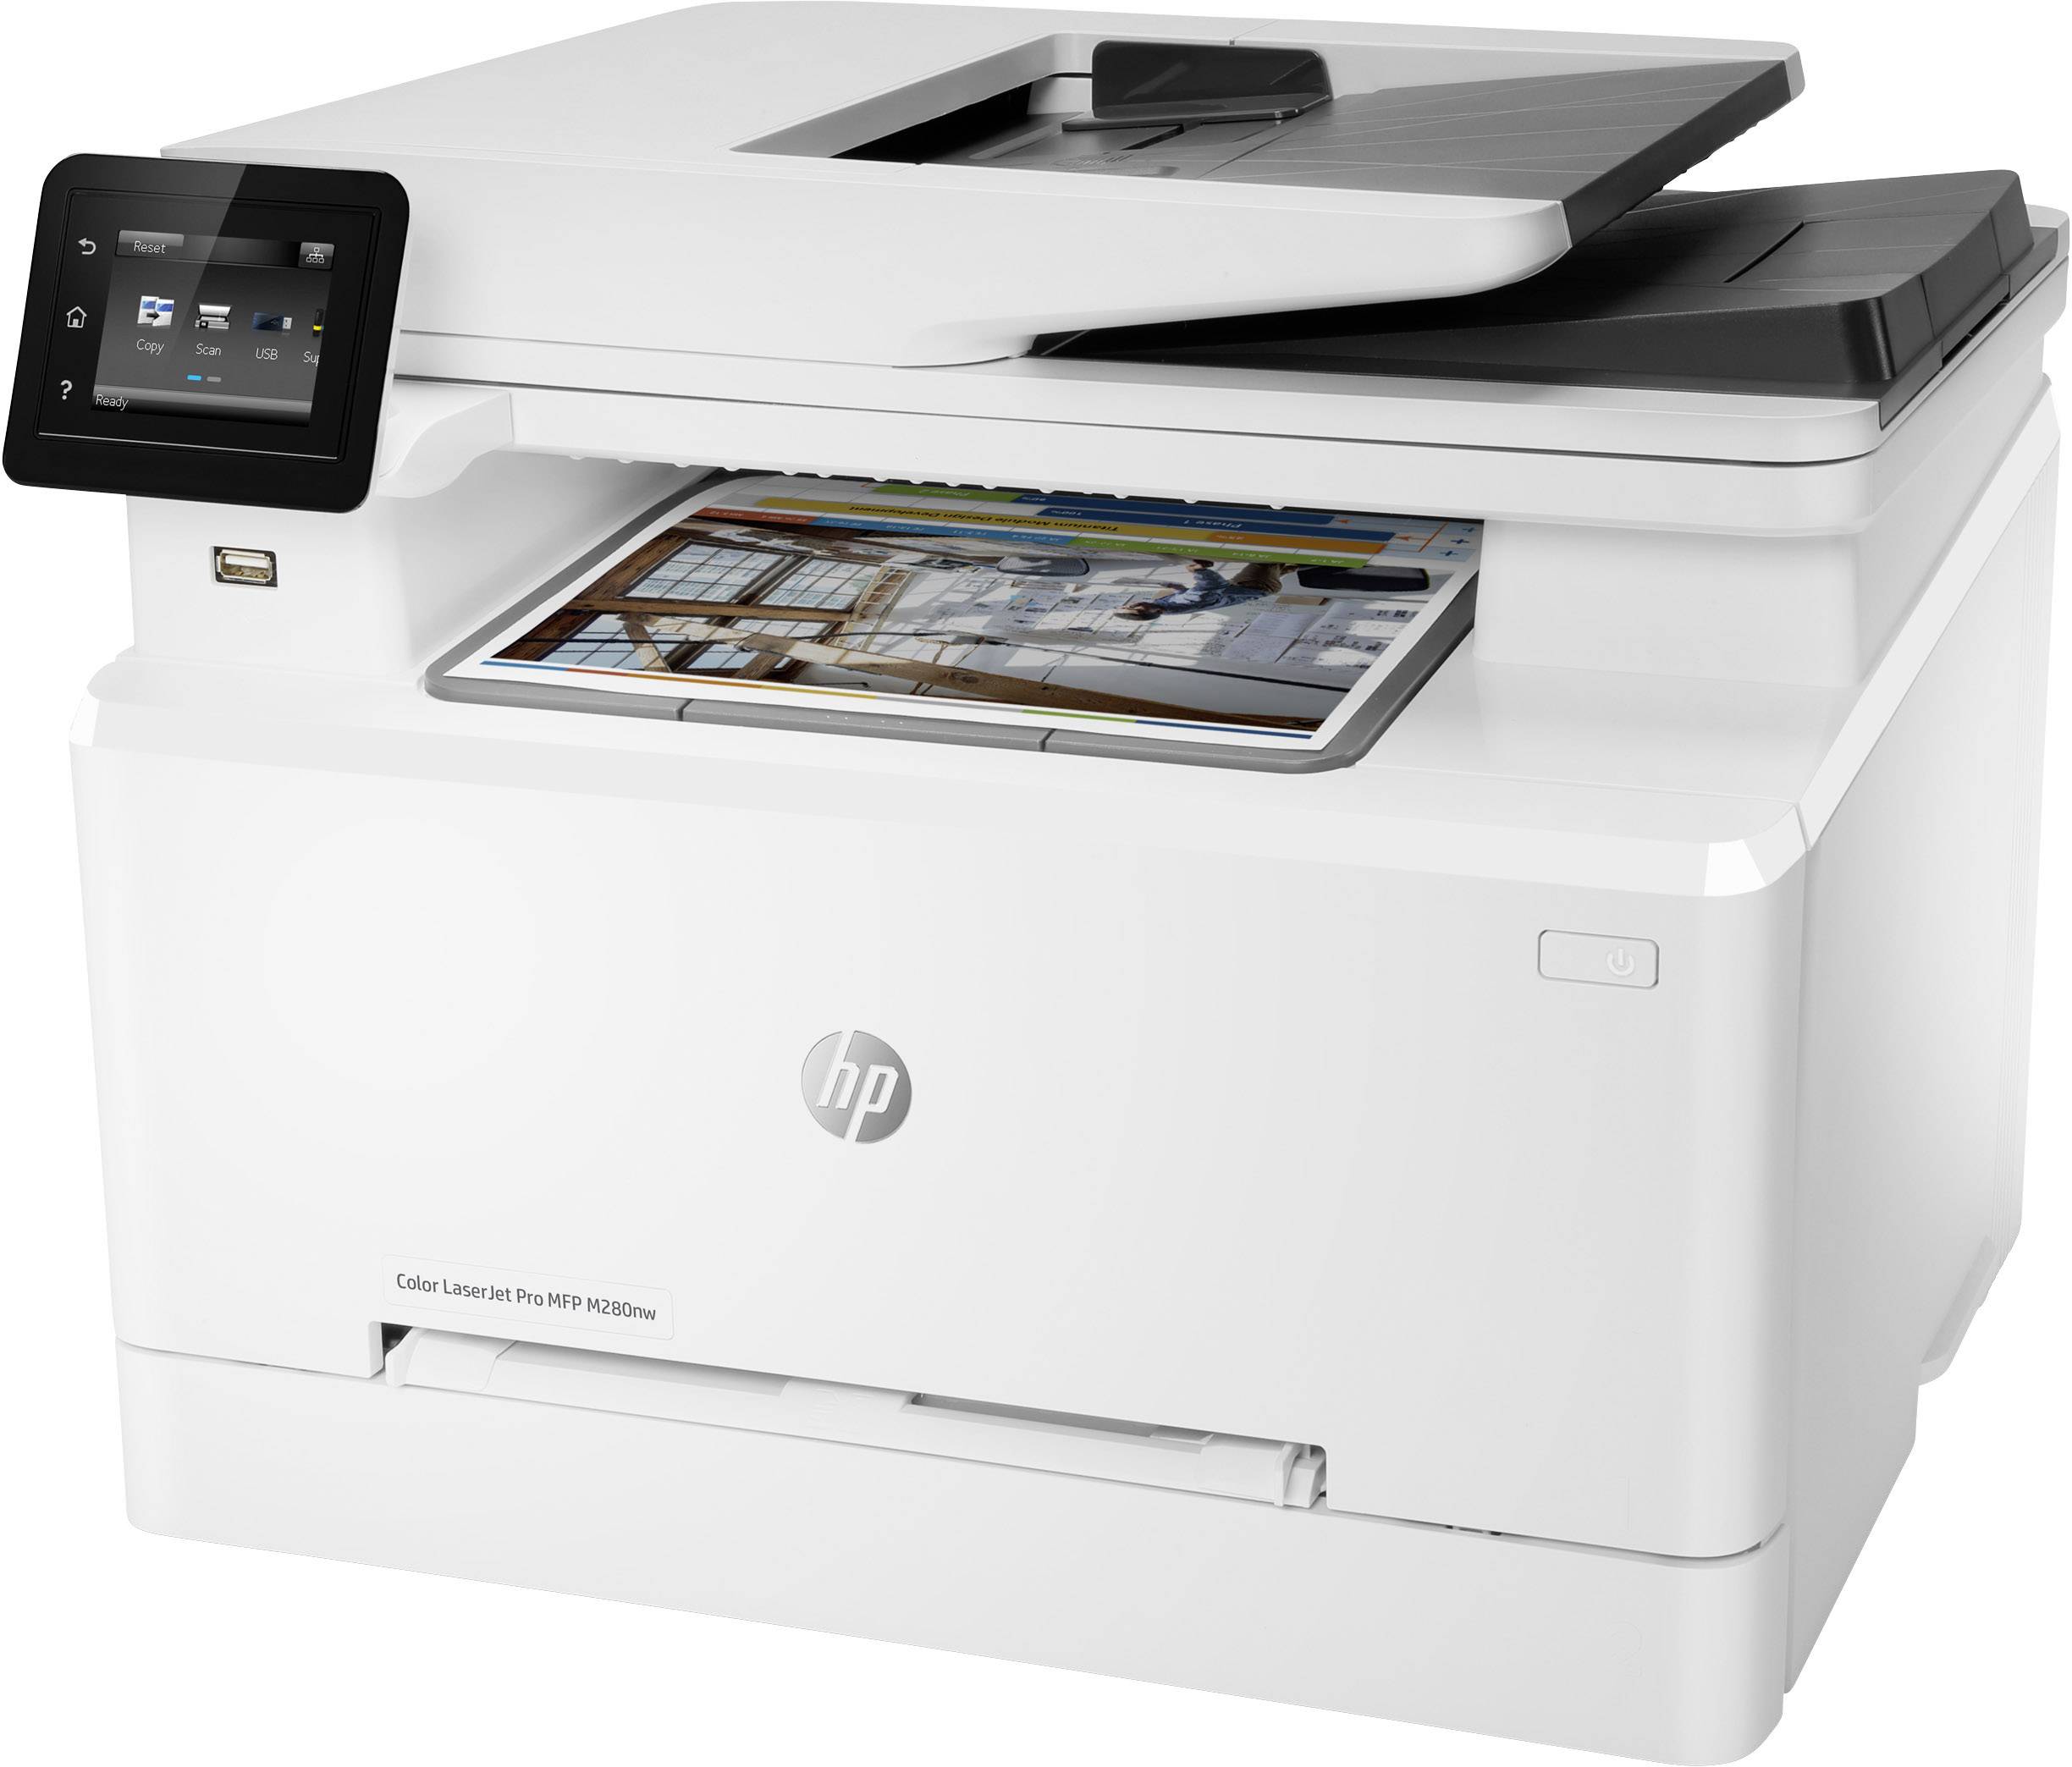 2018 best laser color printer scanner